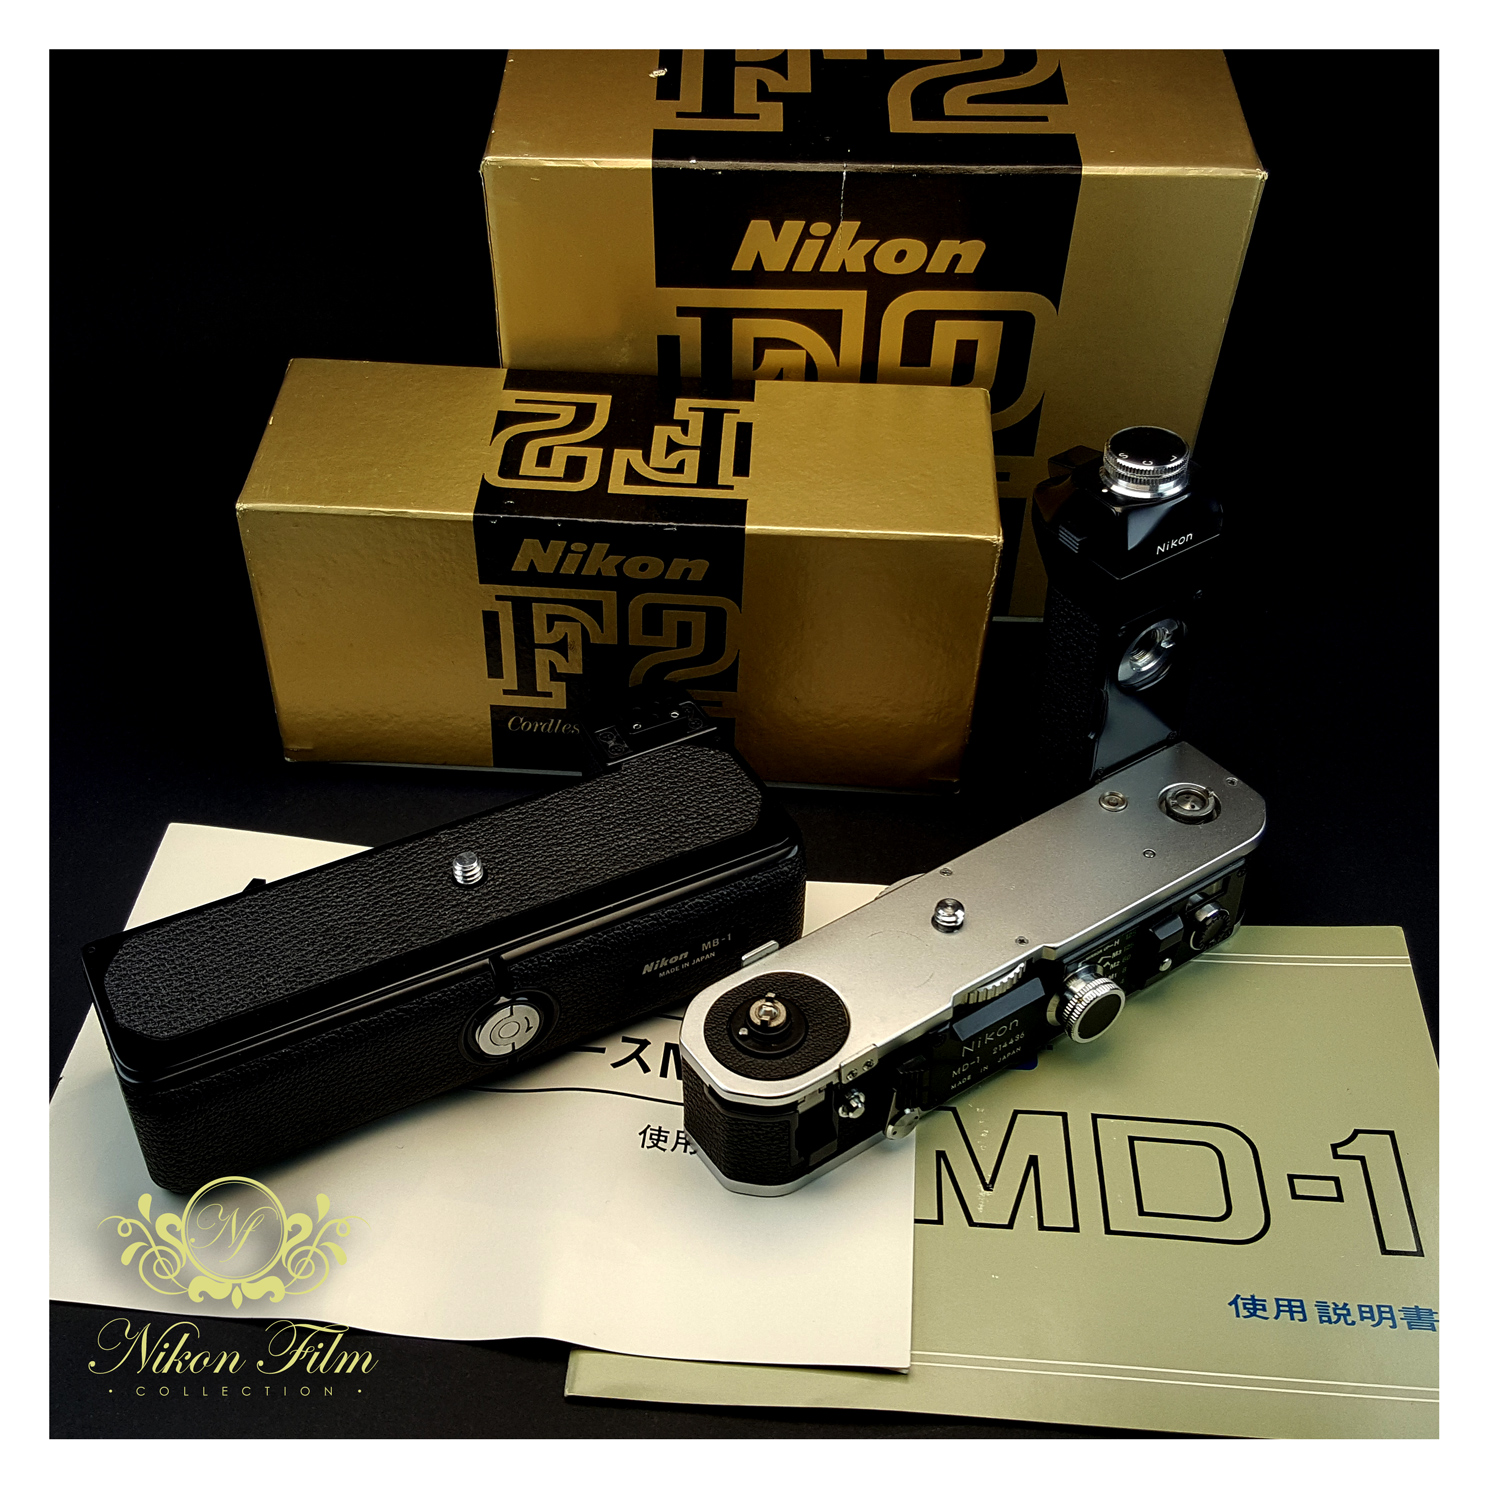 45006-Nikon-MD-1-MB-1-Bundle-1